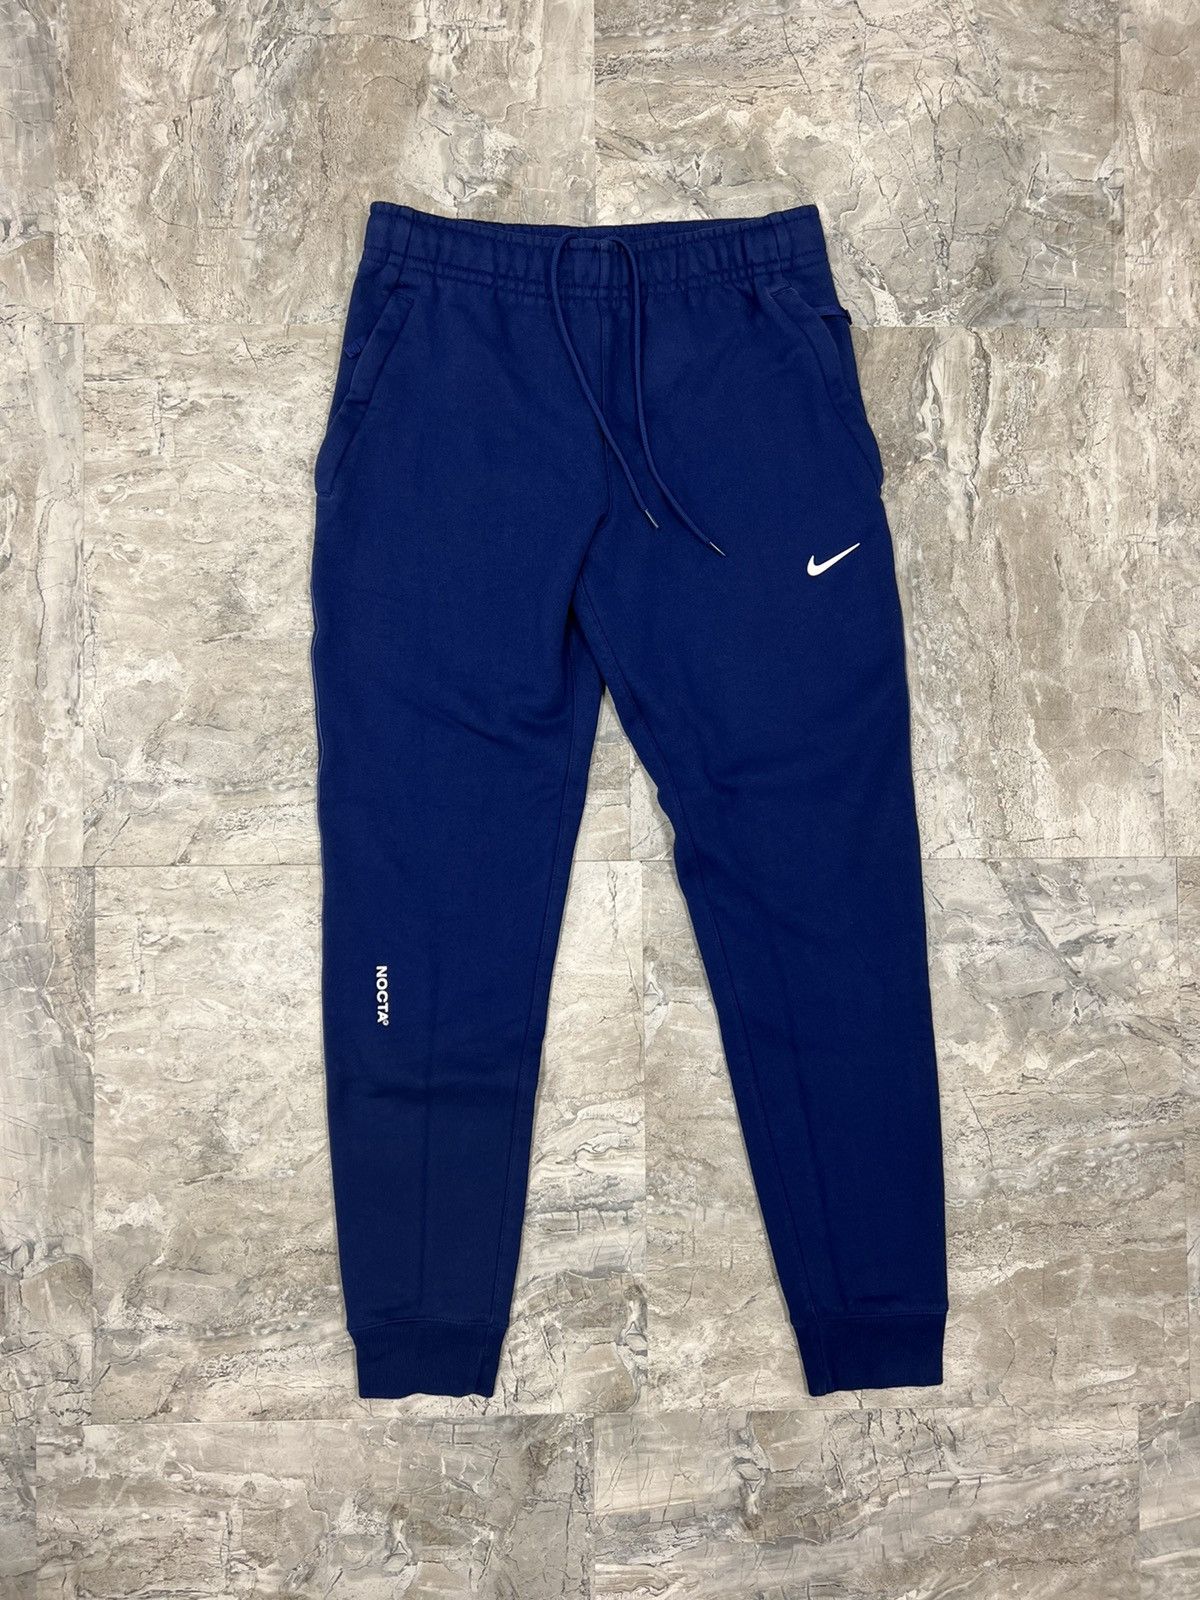 Nike X Drake Nocta Fleece Pants Size XS